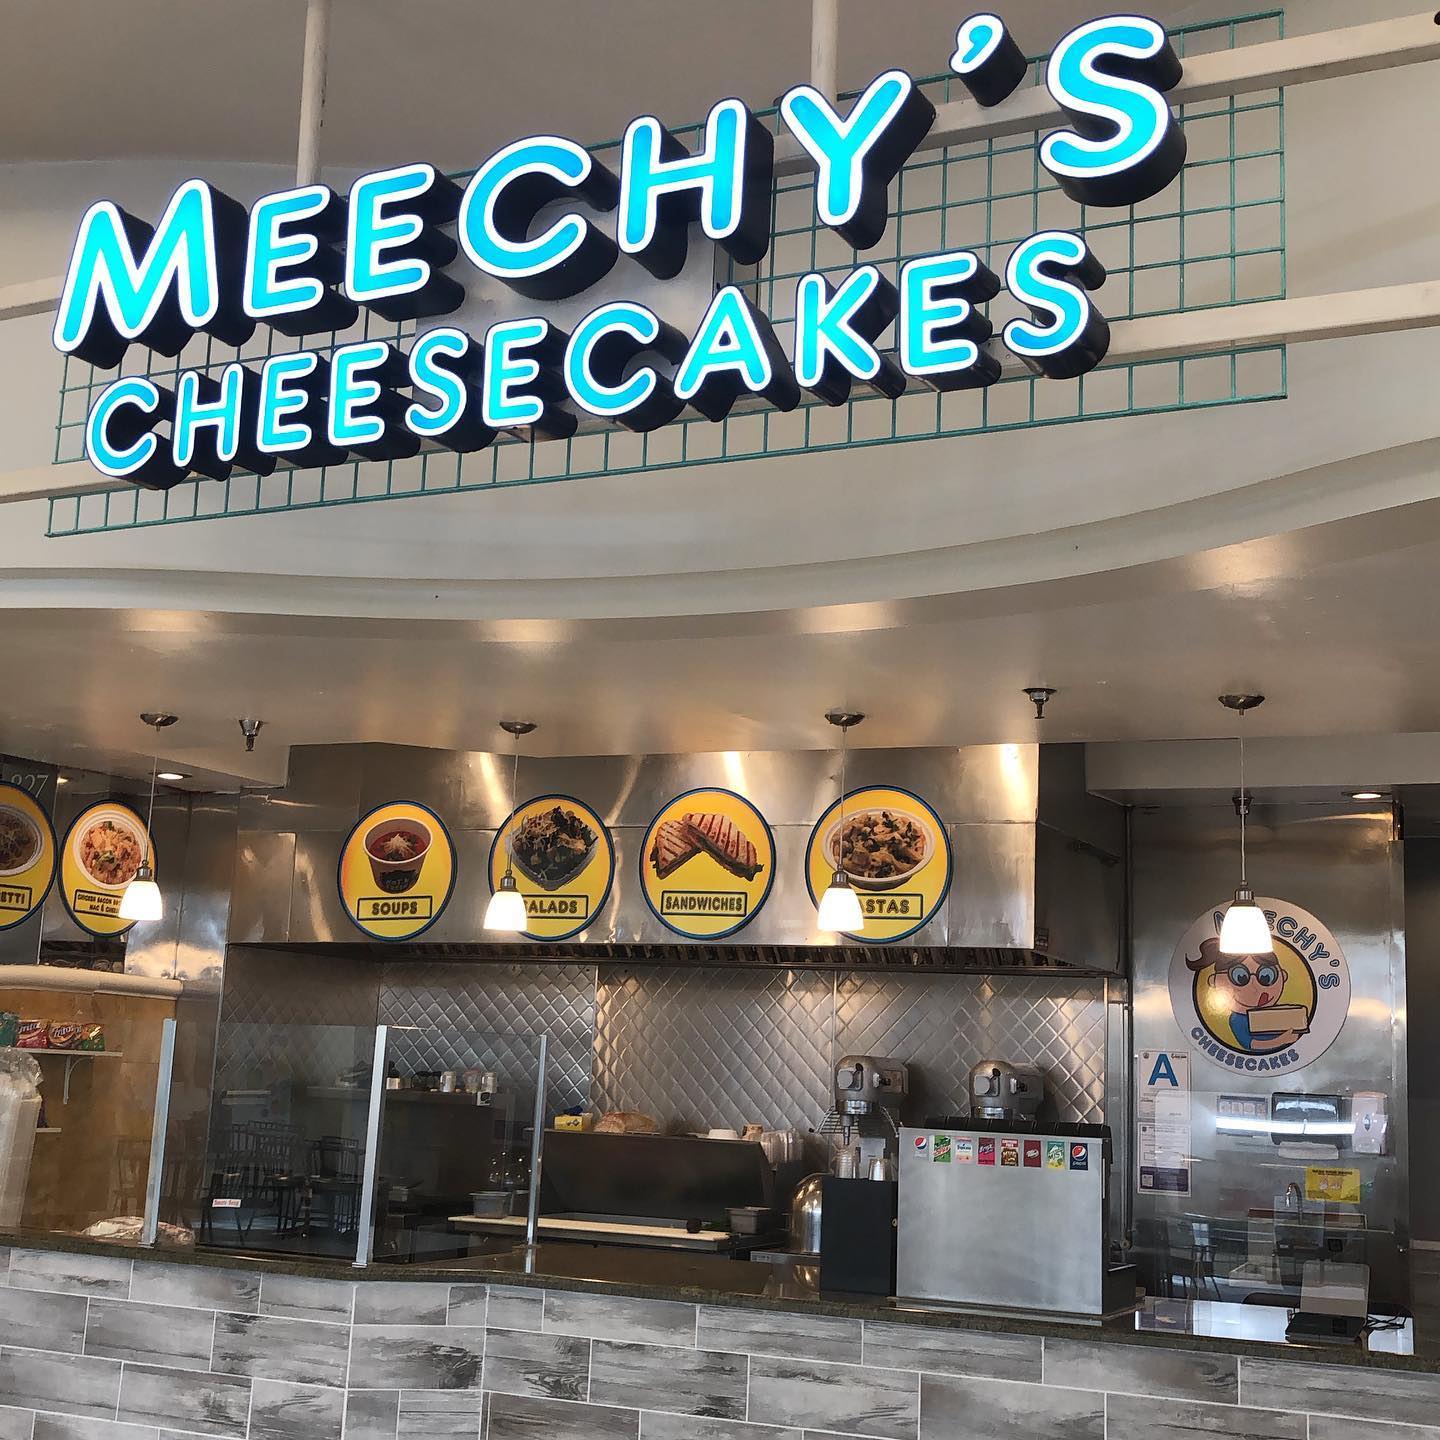 Meechy's Cheesecakes